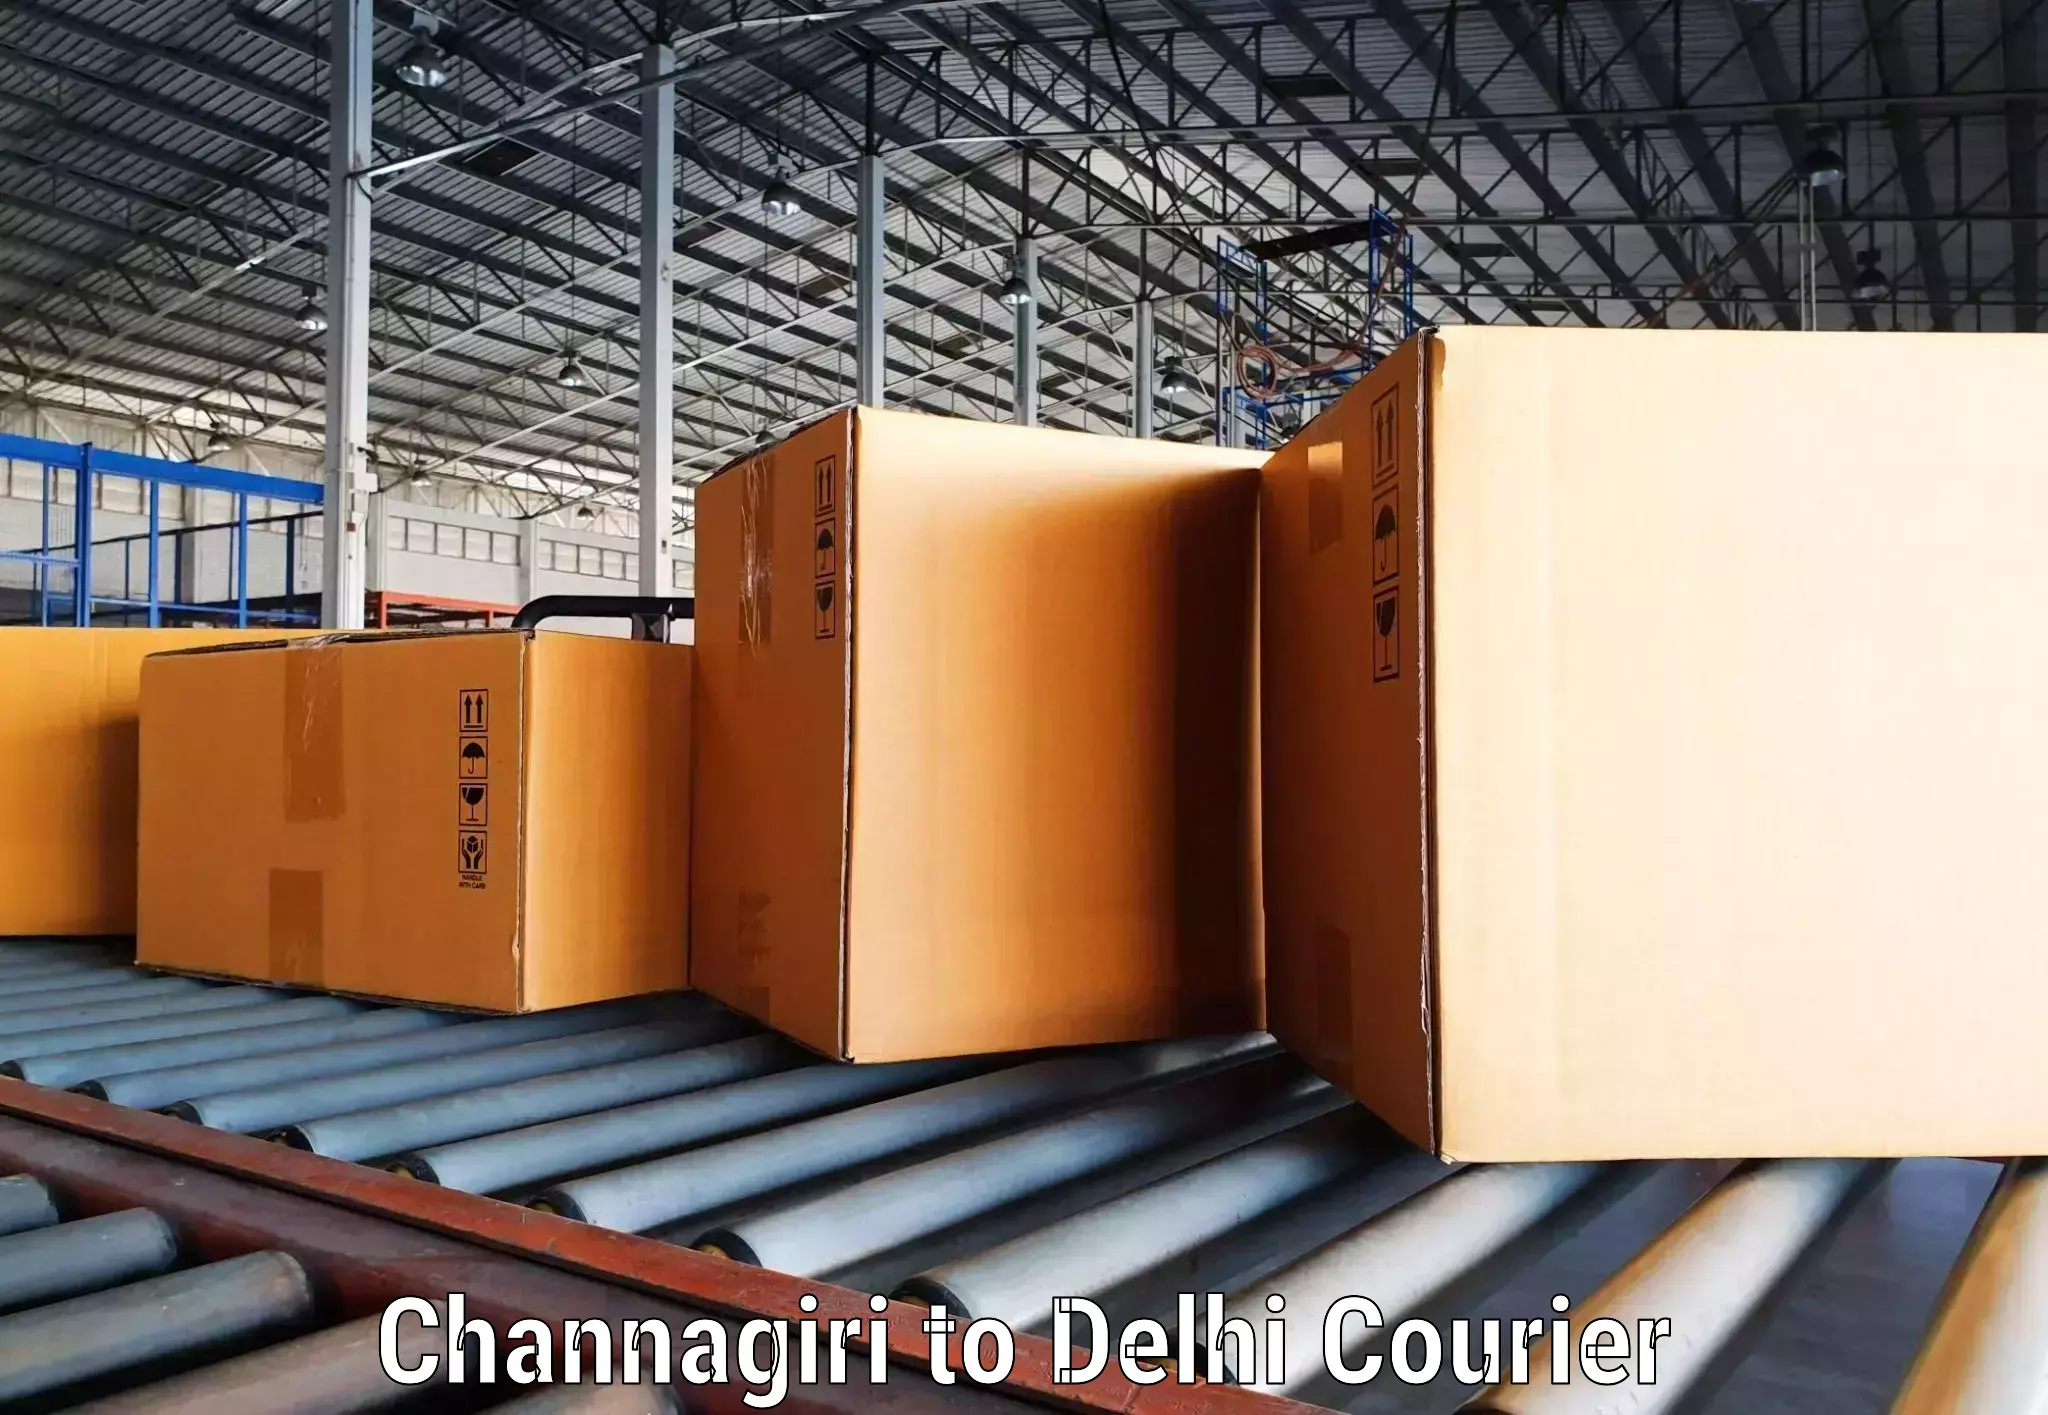 Courier rate comparison Channagiri to Jamia Millia Islamia New Delhi